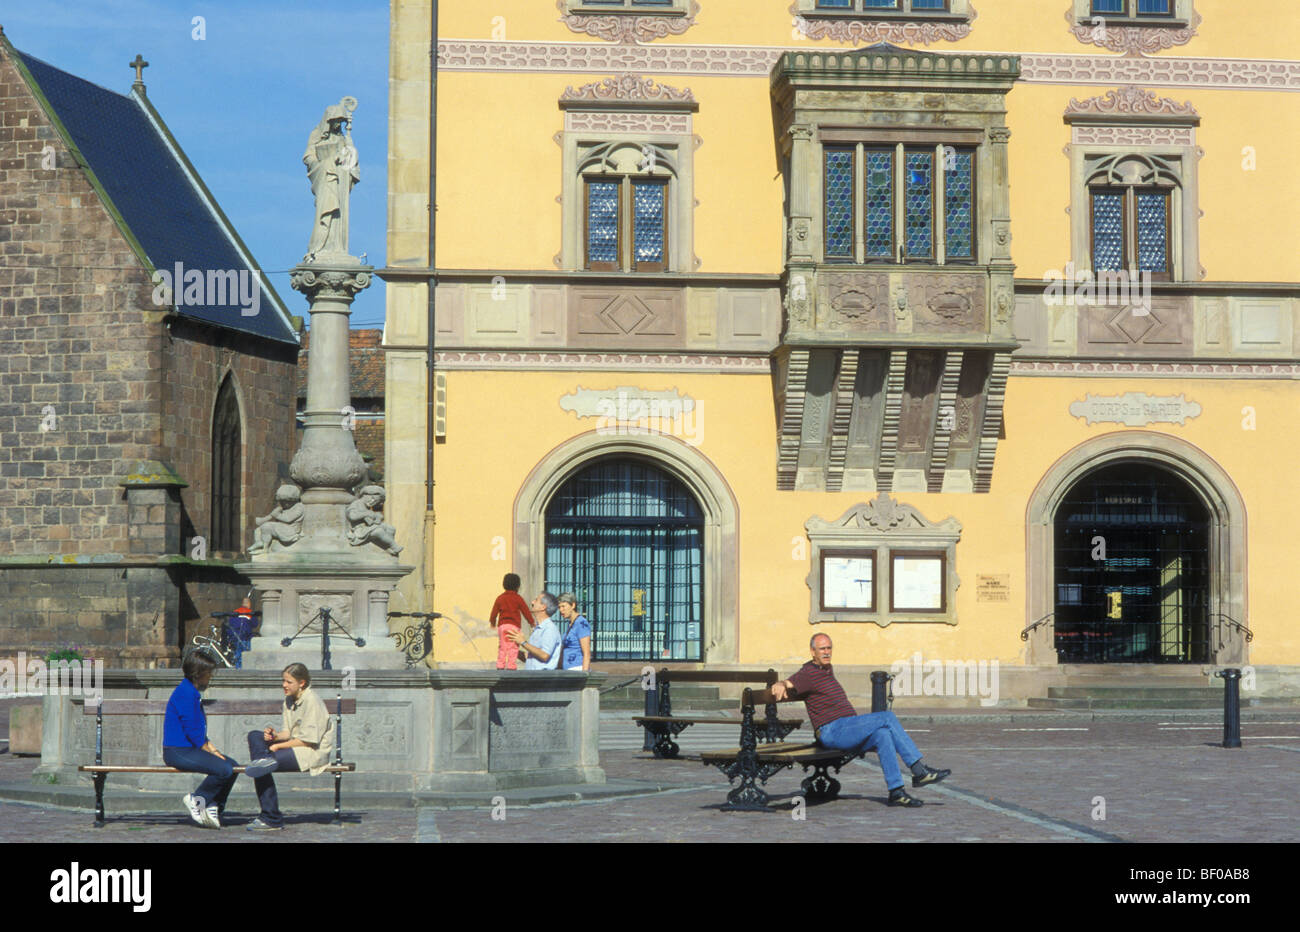 Fountain, City Hall, Obernai, Alsace, France Stock Photo